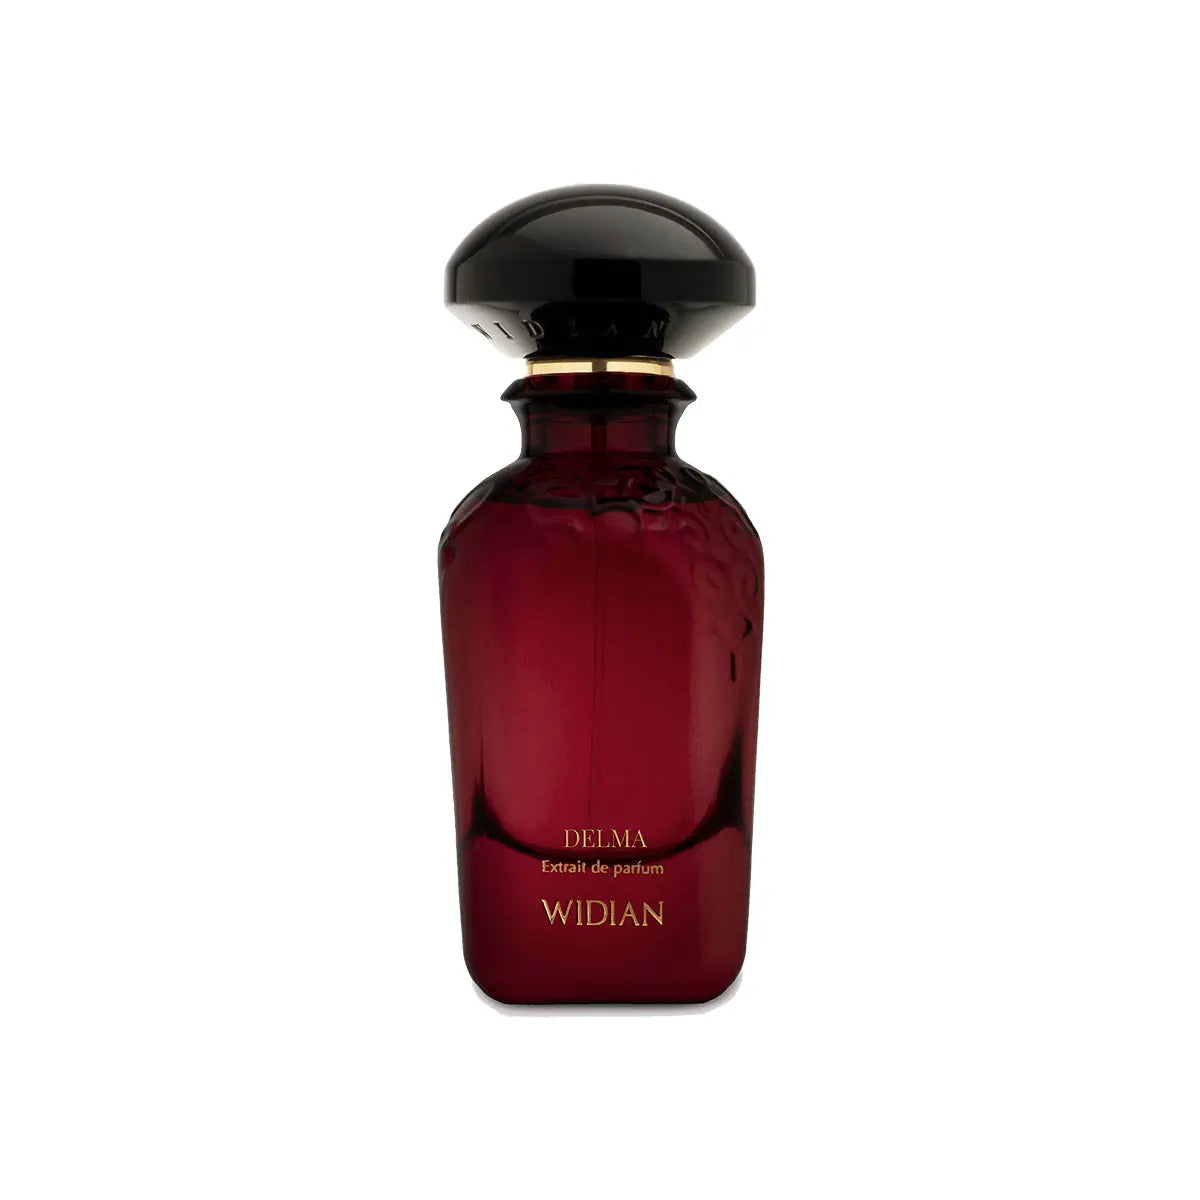 Extrait de Parfum Widian Delma - 50 ml